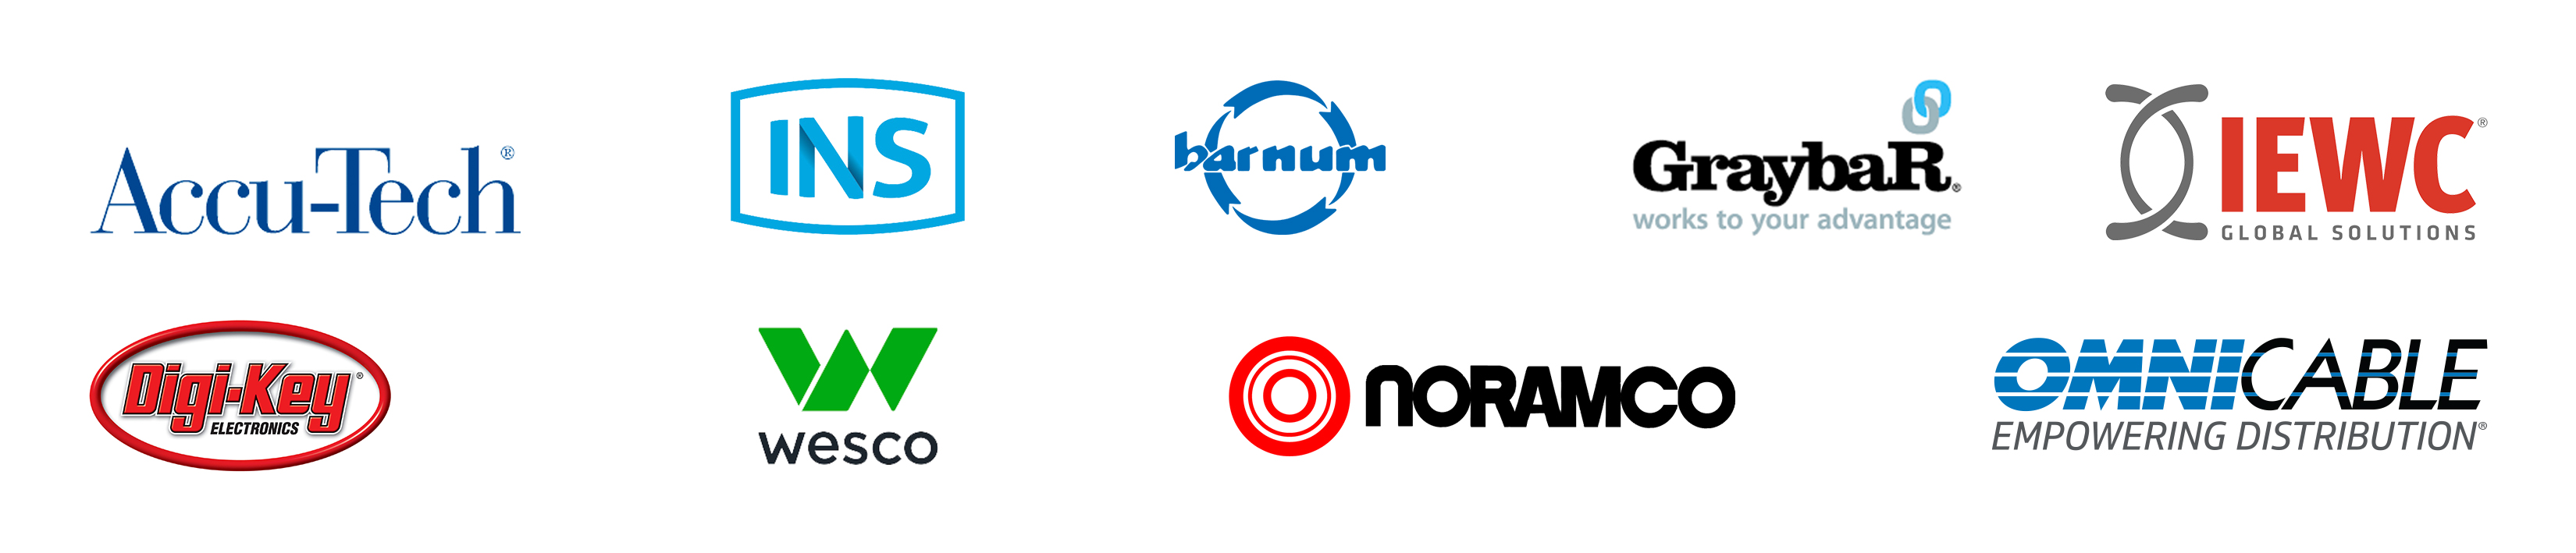 Accu-Tech、INS、Barnum、Graybar、IEWC、Digi-Key、Wesco、Noramco和OmniCable的标志